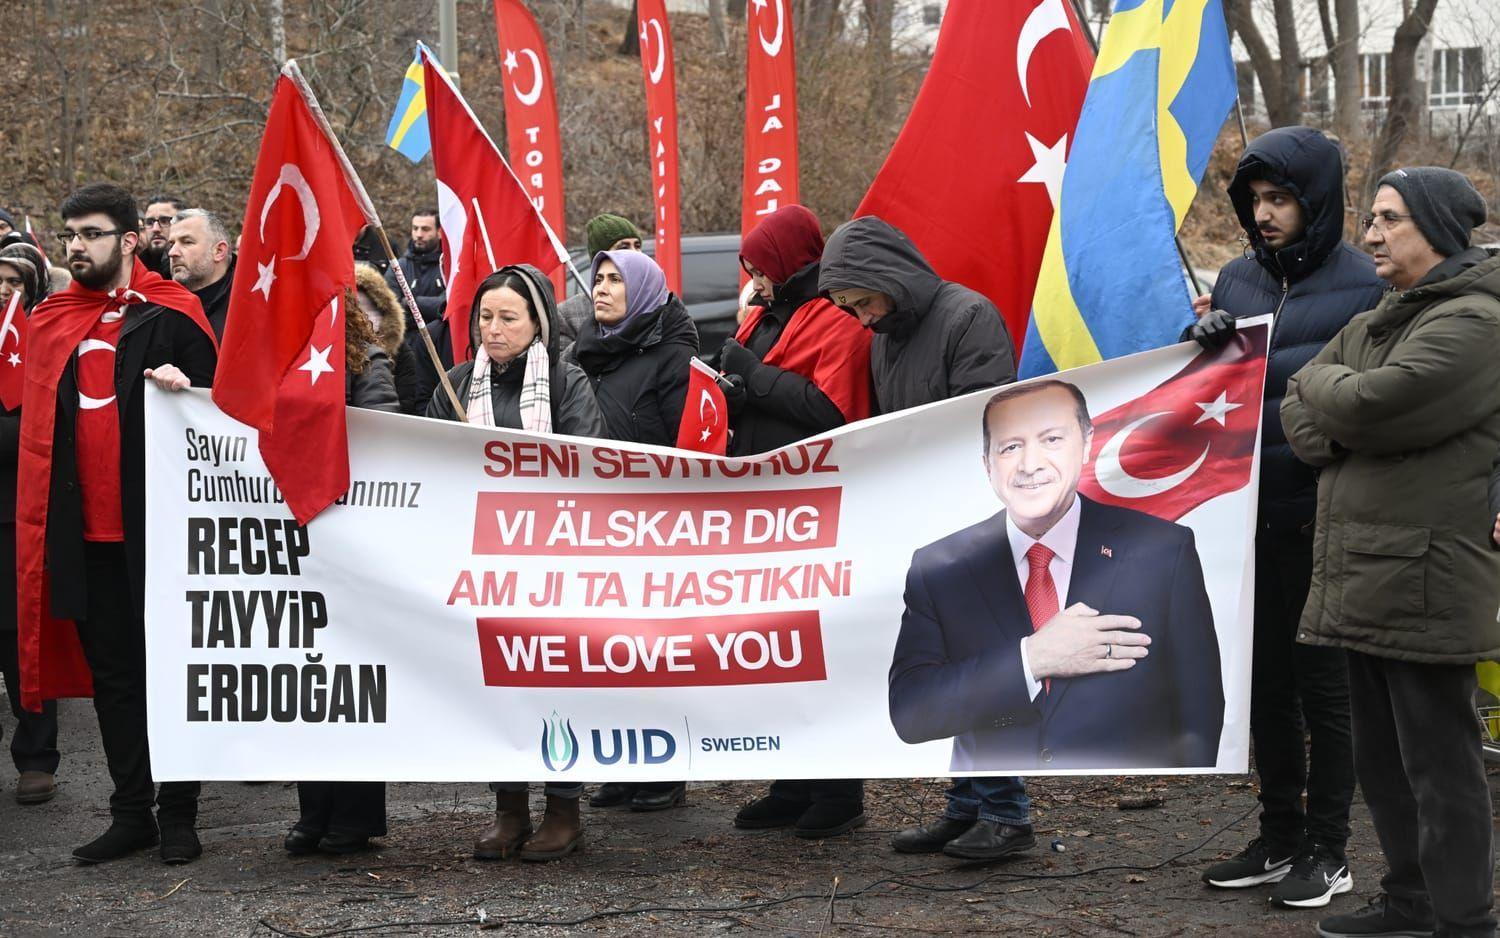 Den pro-turkiska organisationen Union of European Turkish Democrats (UETD) demonstrerade till stöd för Turkiet och president Erdogan på lördagen.